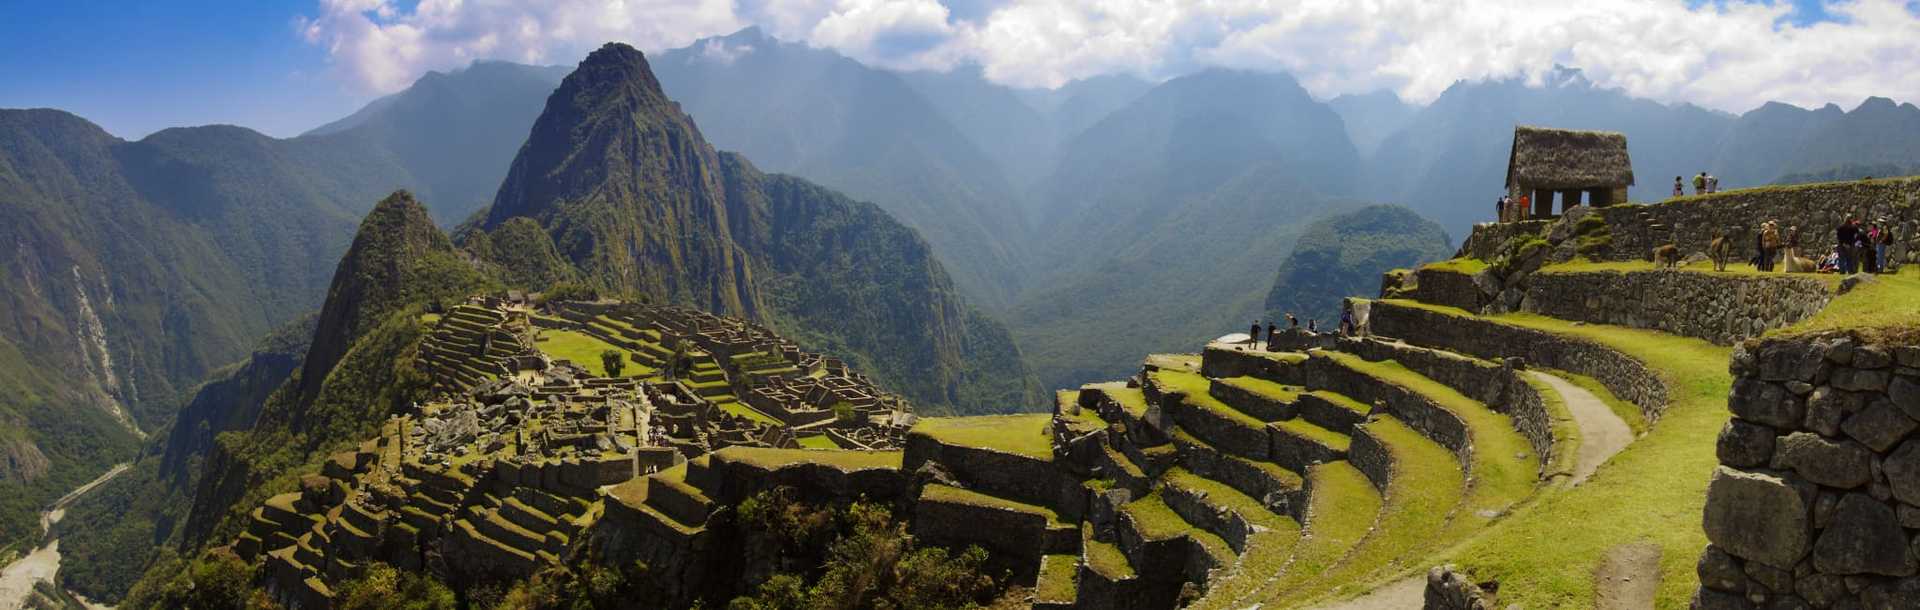 View of Machu Picchu in Peru.